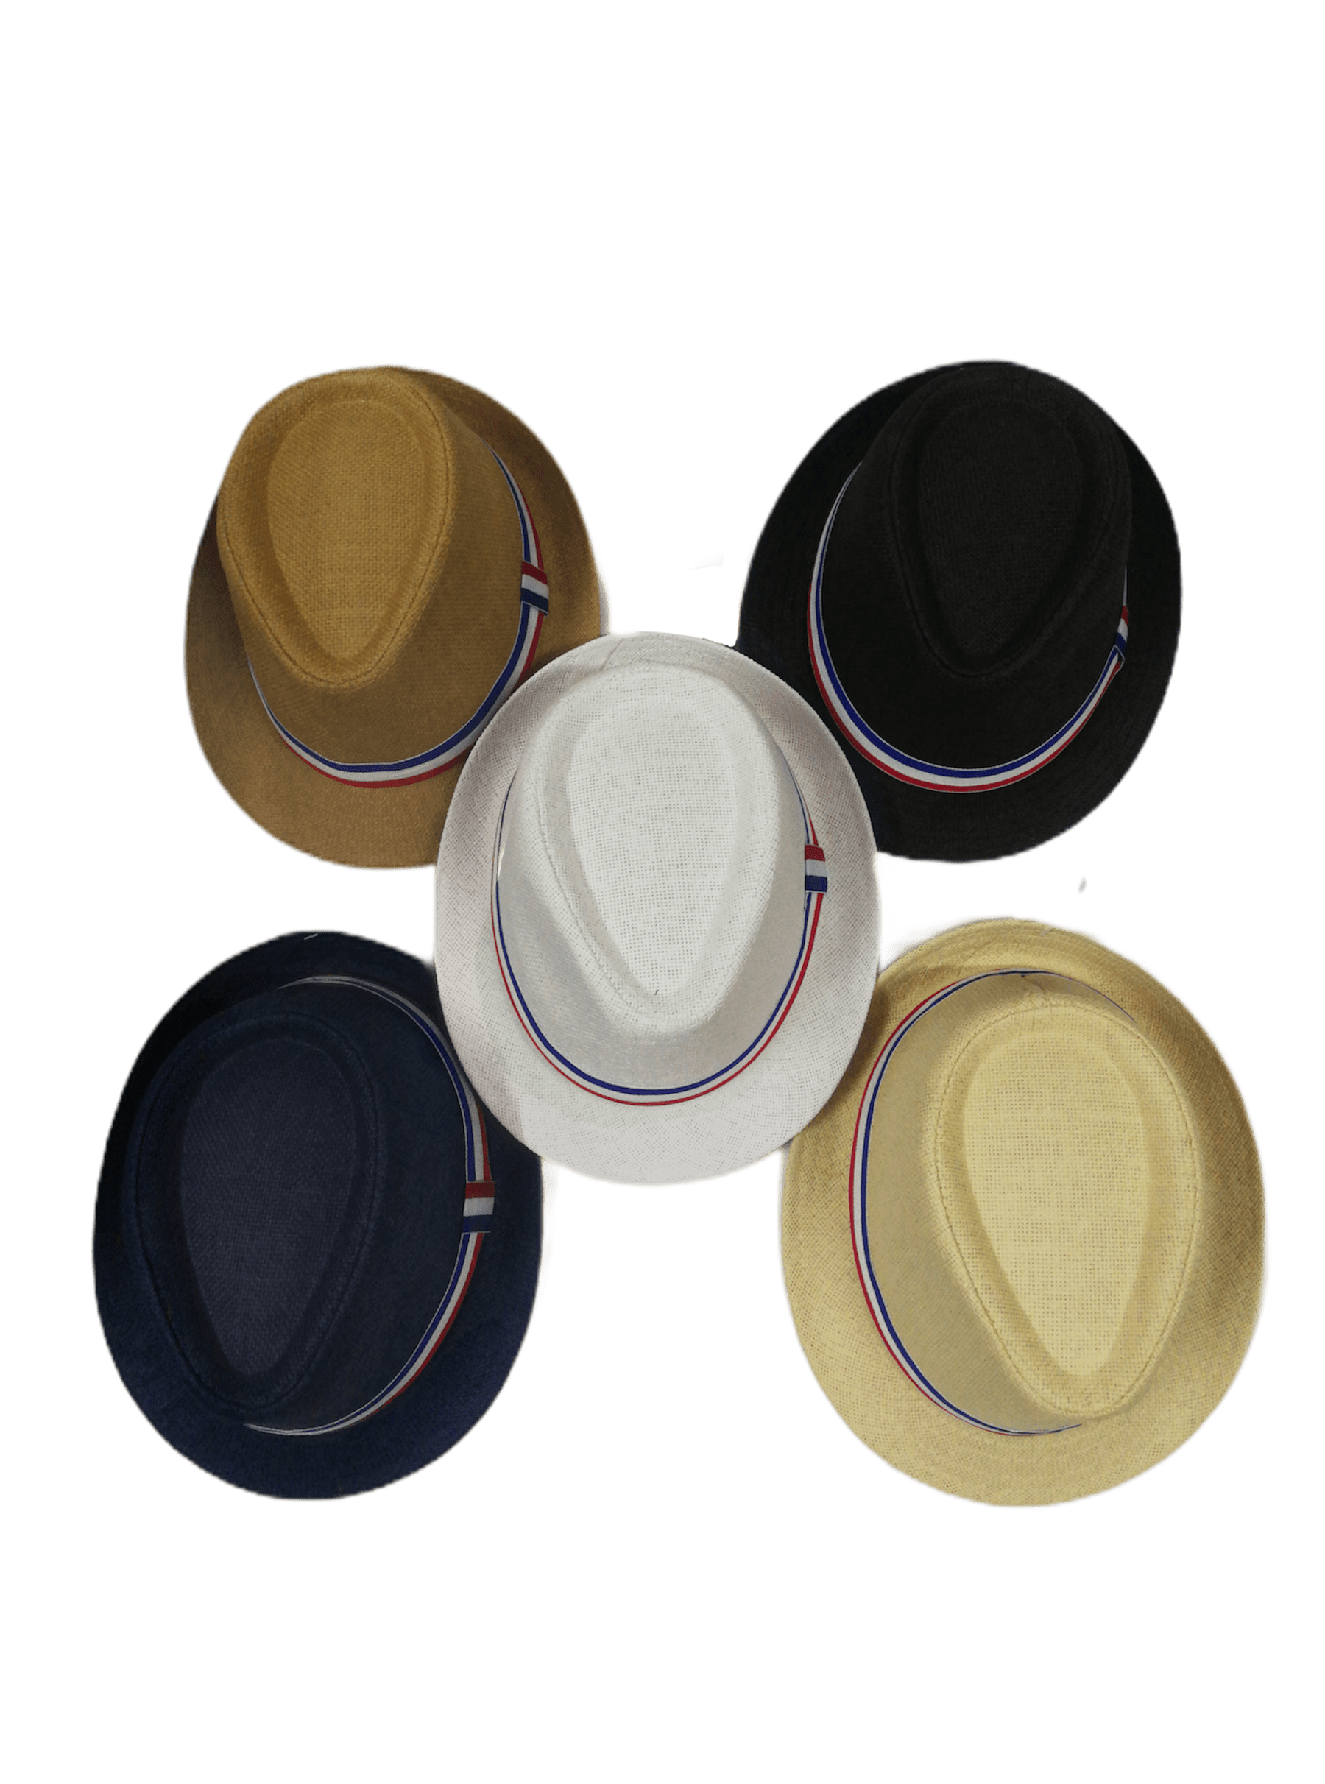 Chapeaux de paille France  (x12) 1,90€/unité | Grossiste-pro